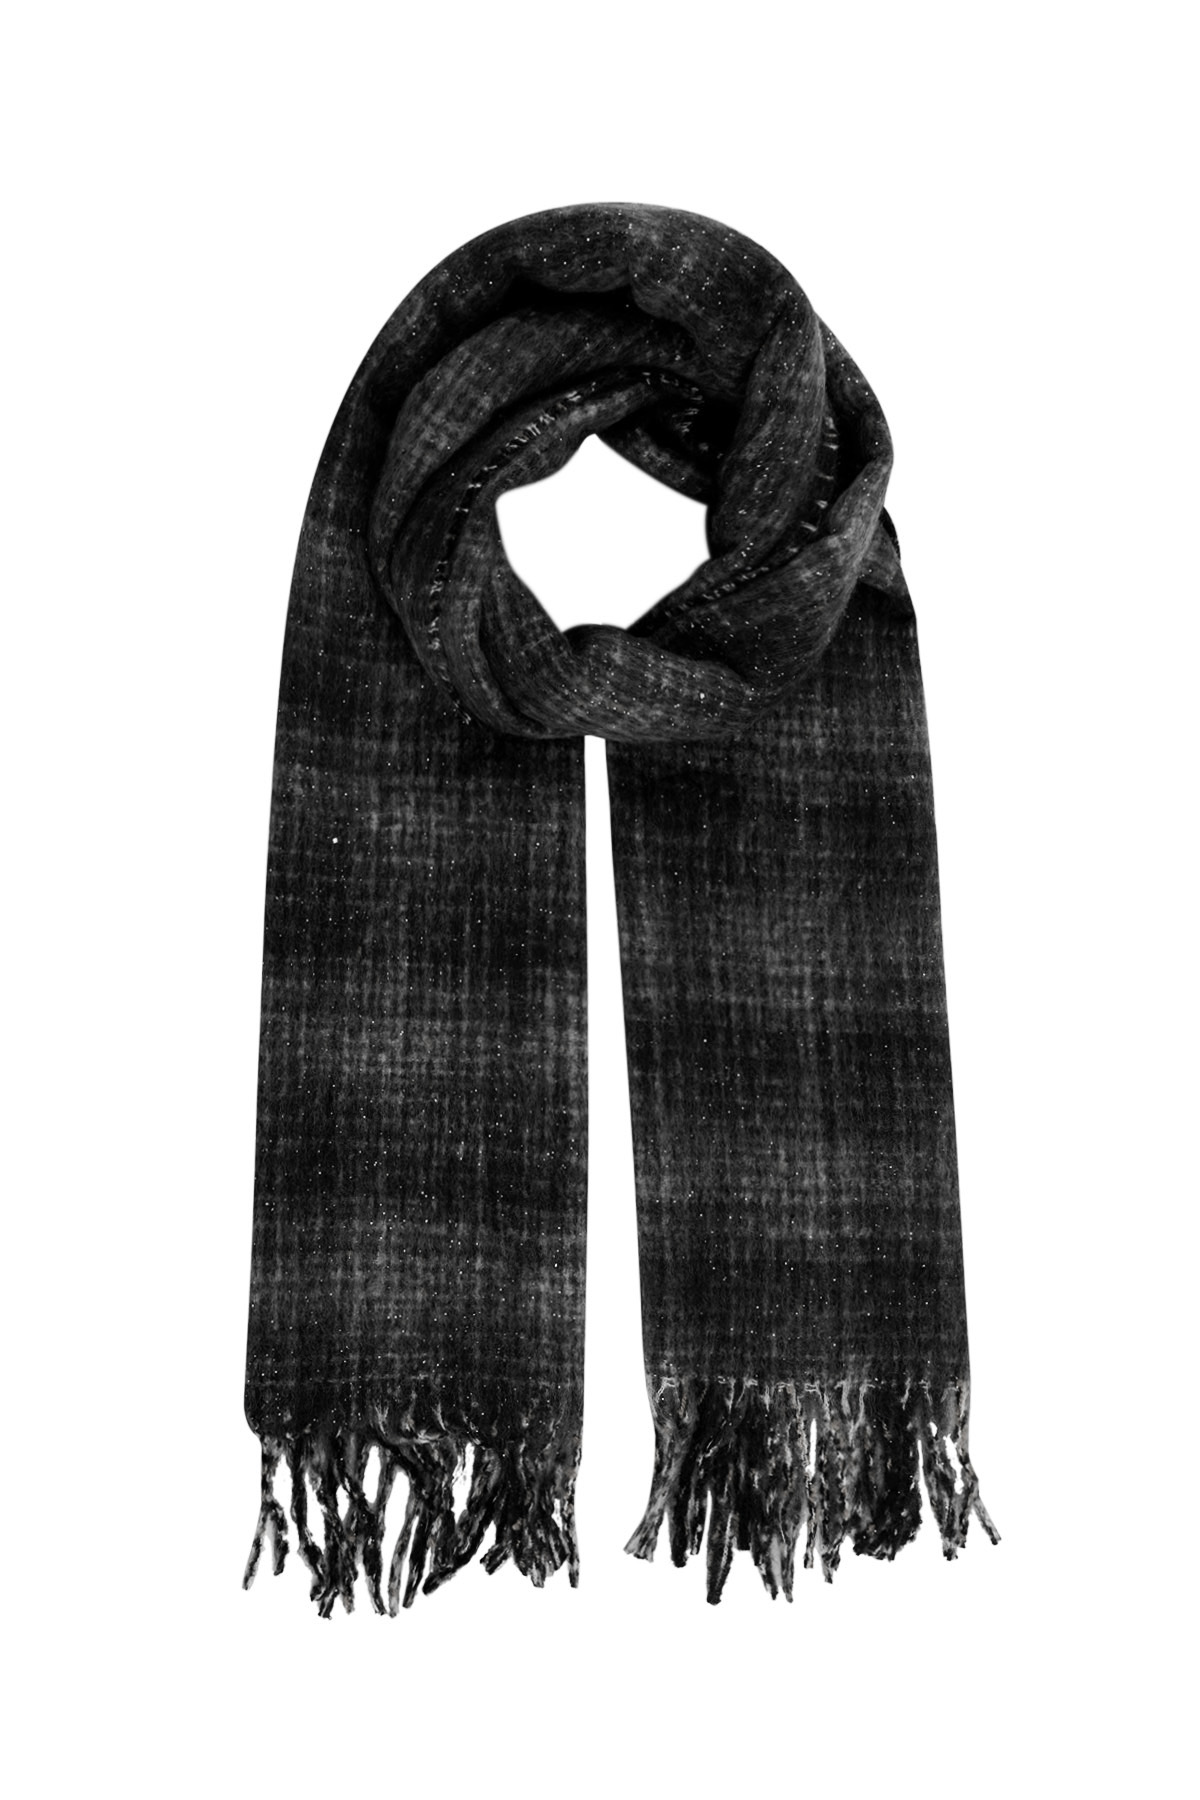 Calda sciarpa invernale a quadri - nera h5 